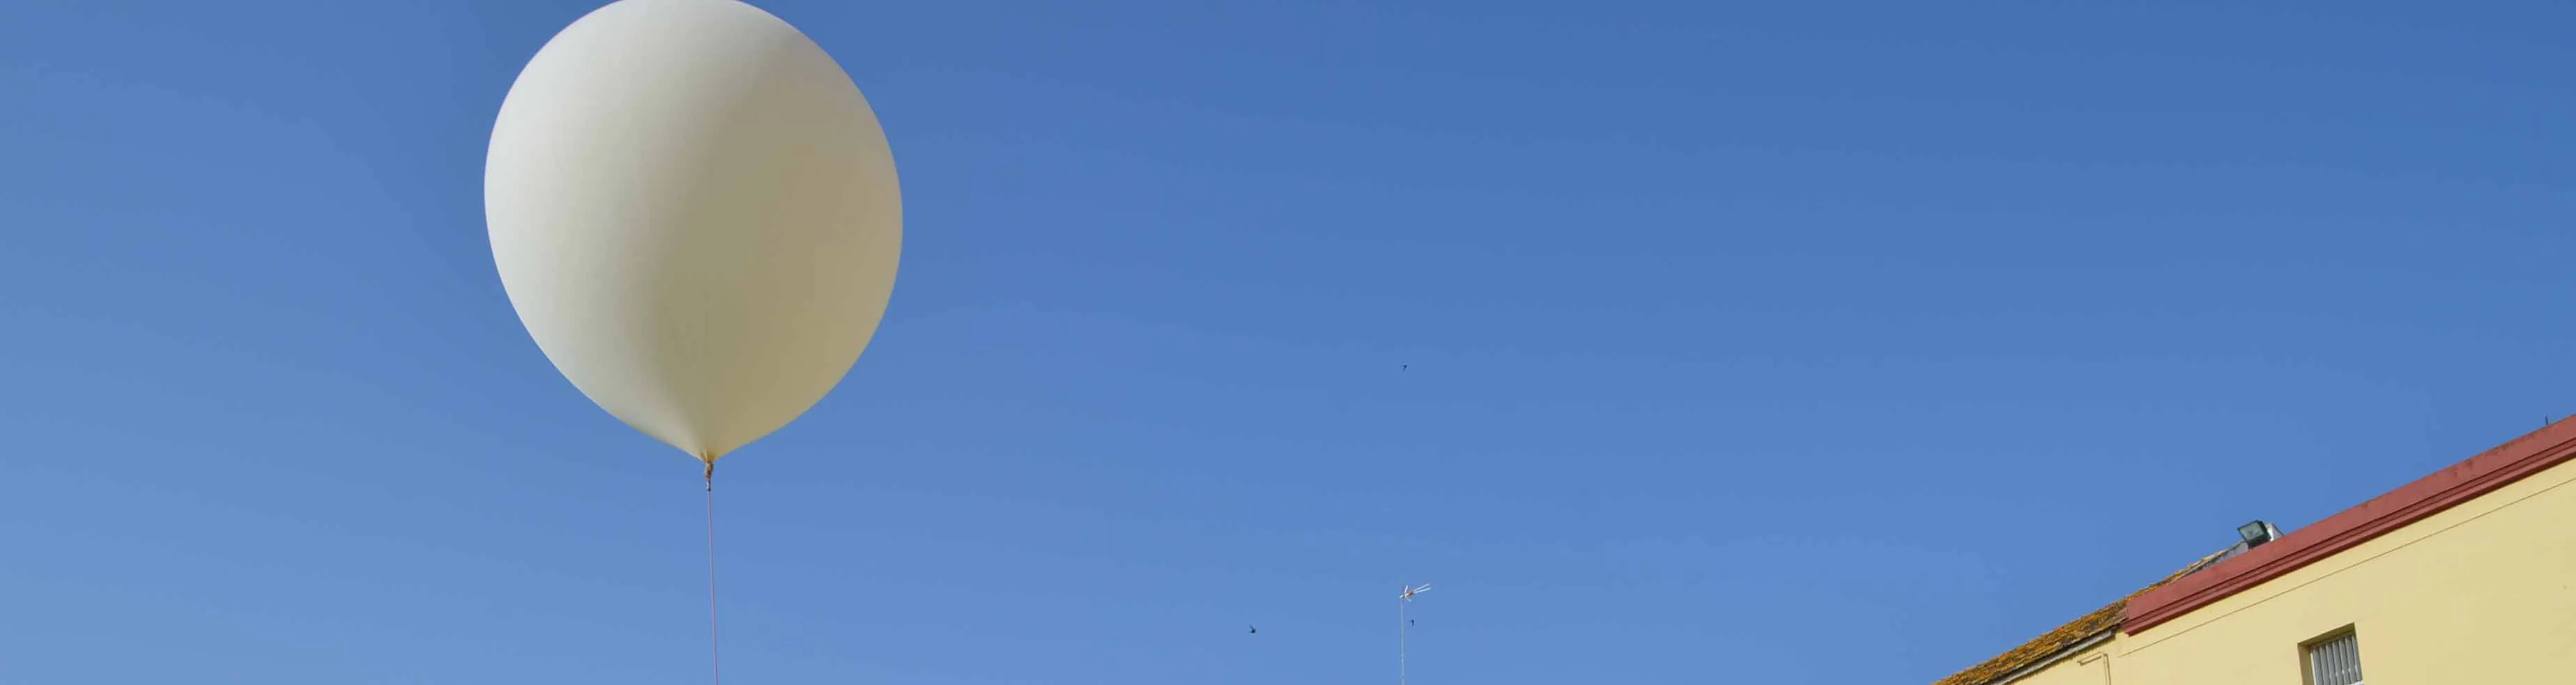 Uno de los lanzamientos a la estratosfera realizado en el colegio de los Salesianos